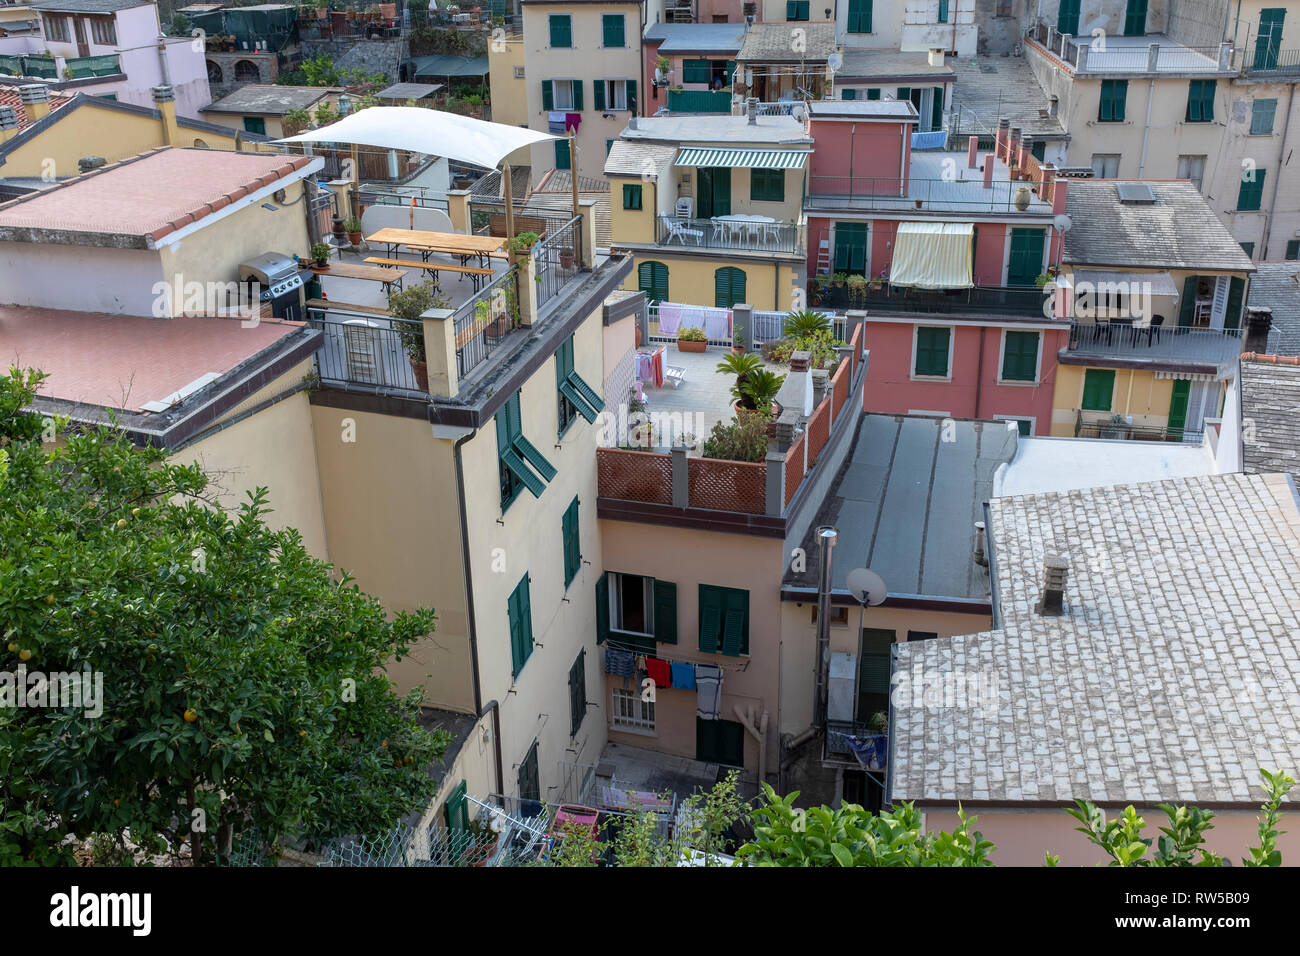 Riomaggiore, a small town in Cinque Terre, Italy Stock Photo